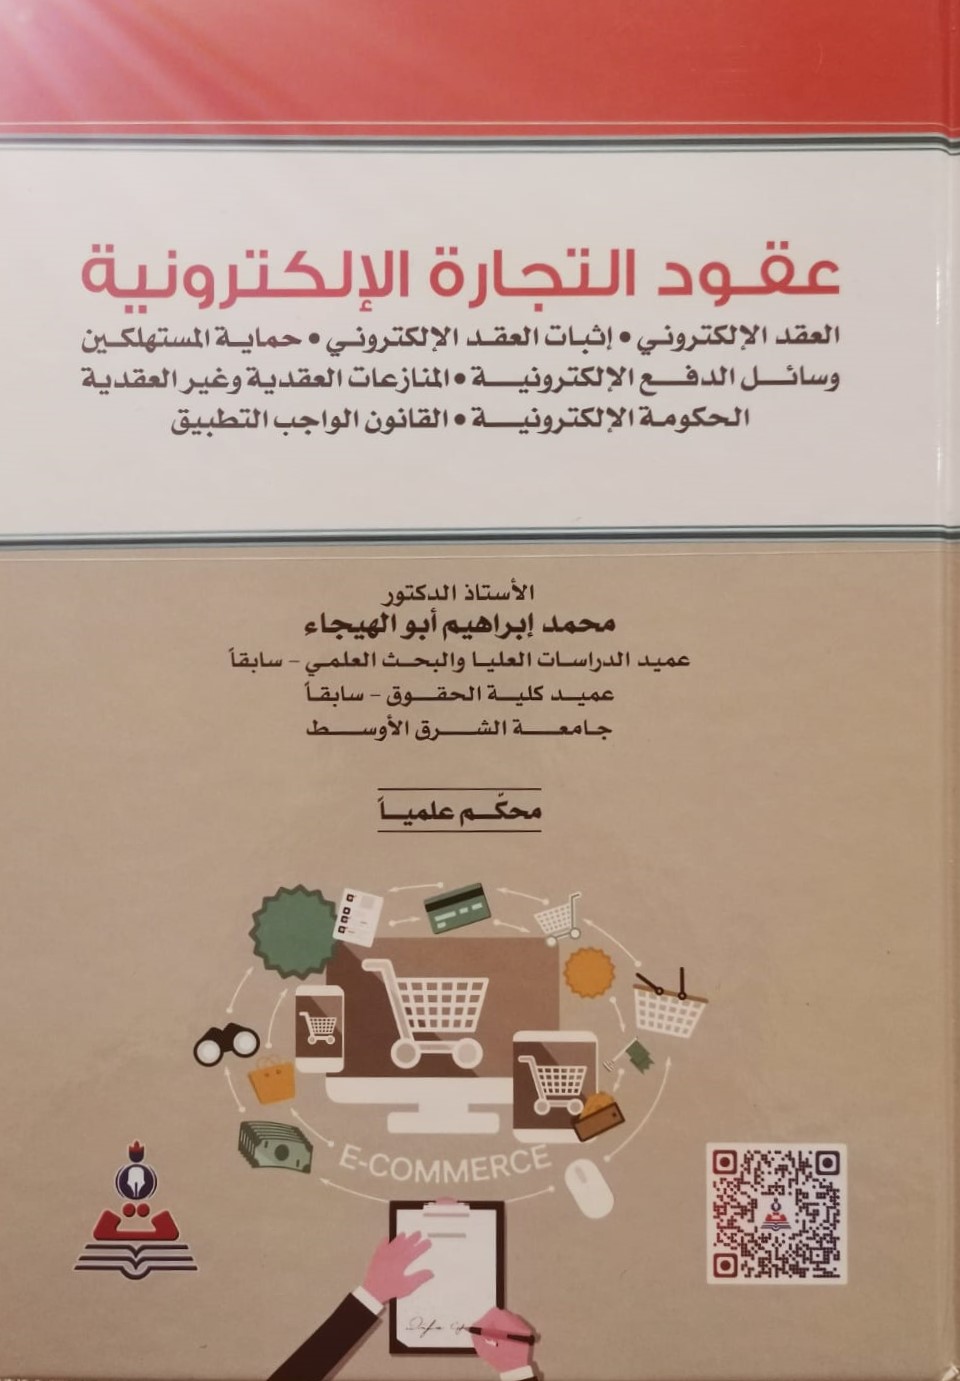 كتابٌ مُحكّم للدكتور أبو الهيجاء في "حقوق الشرق الأوسط"